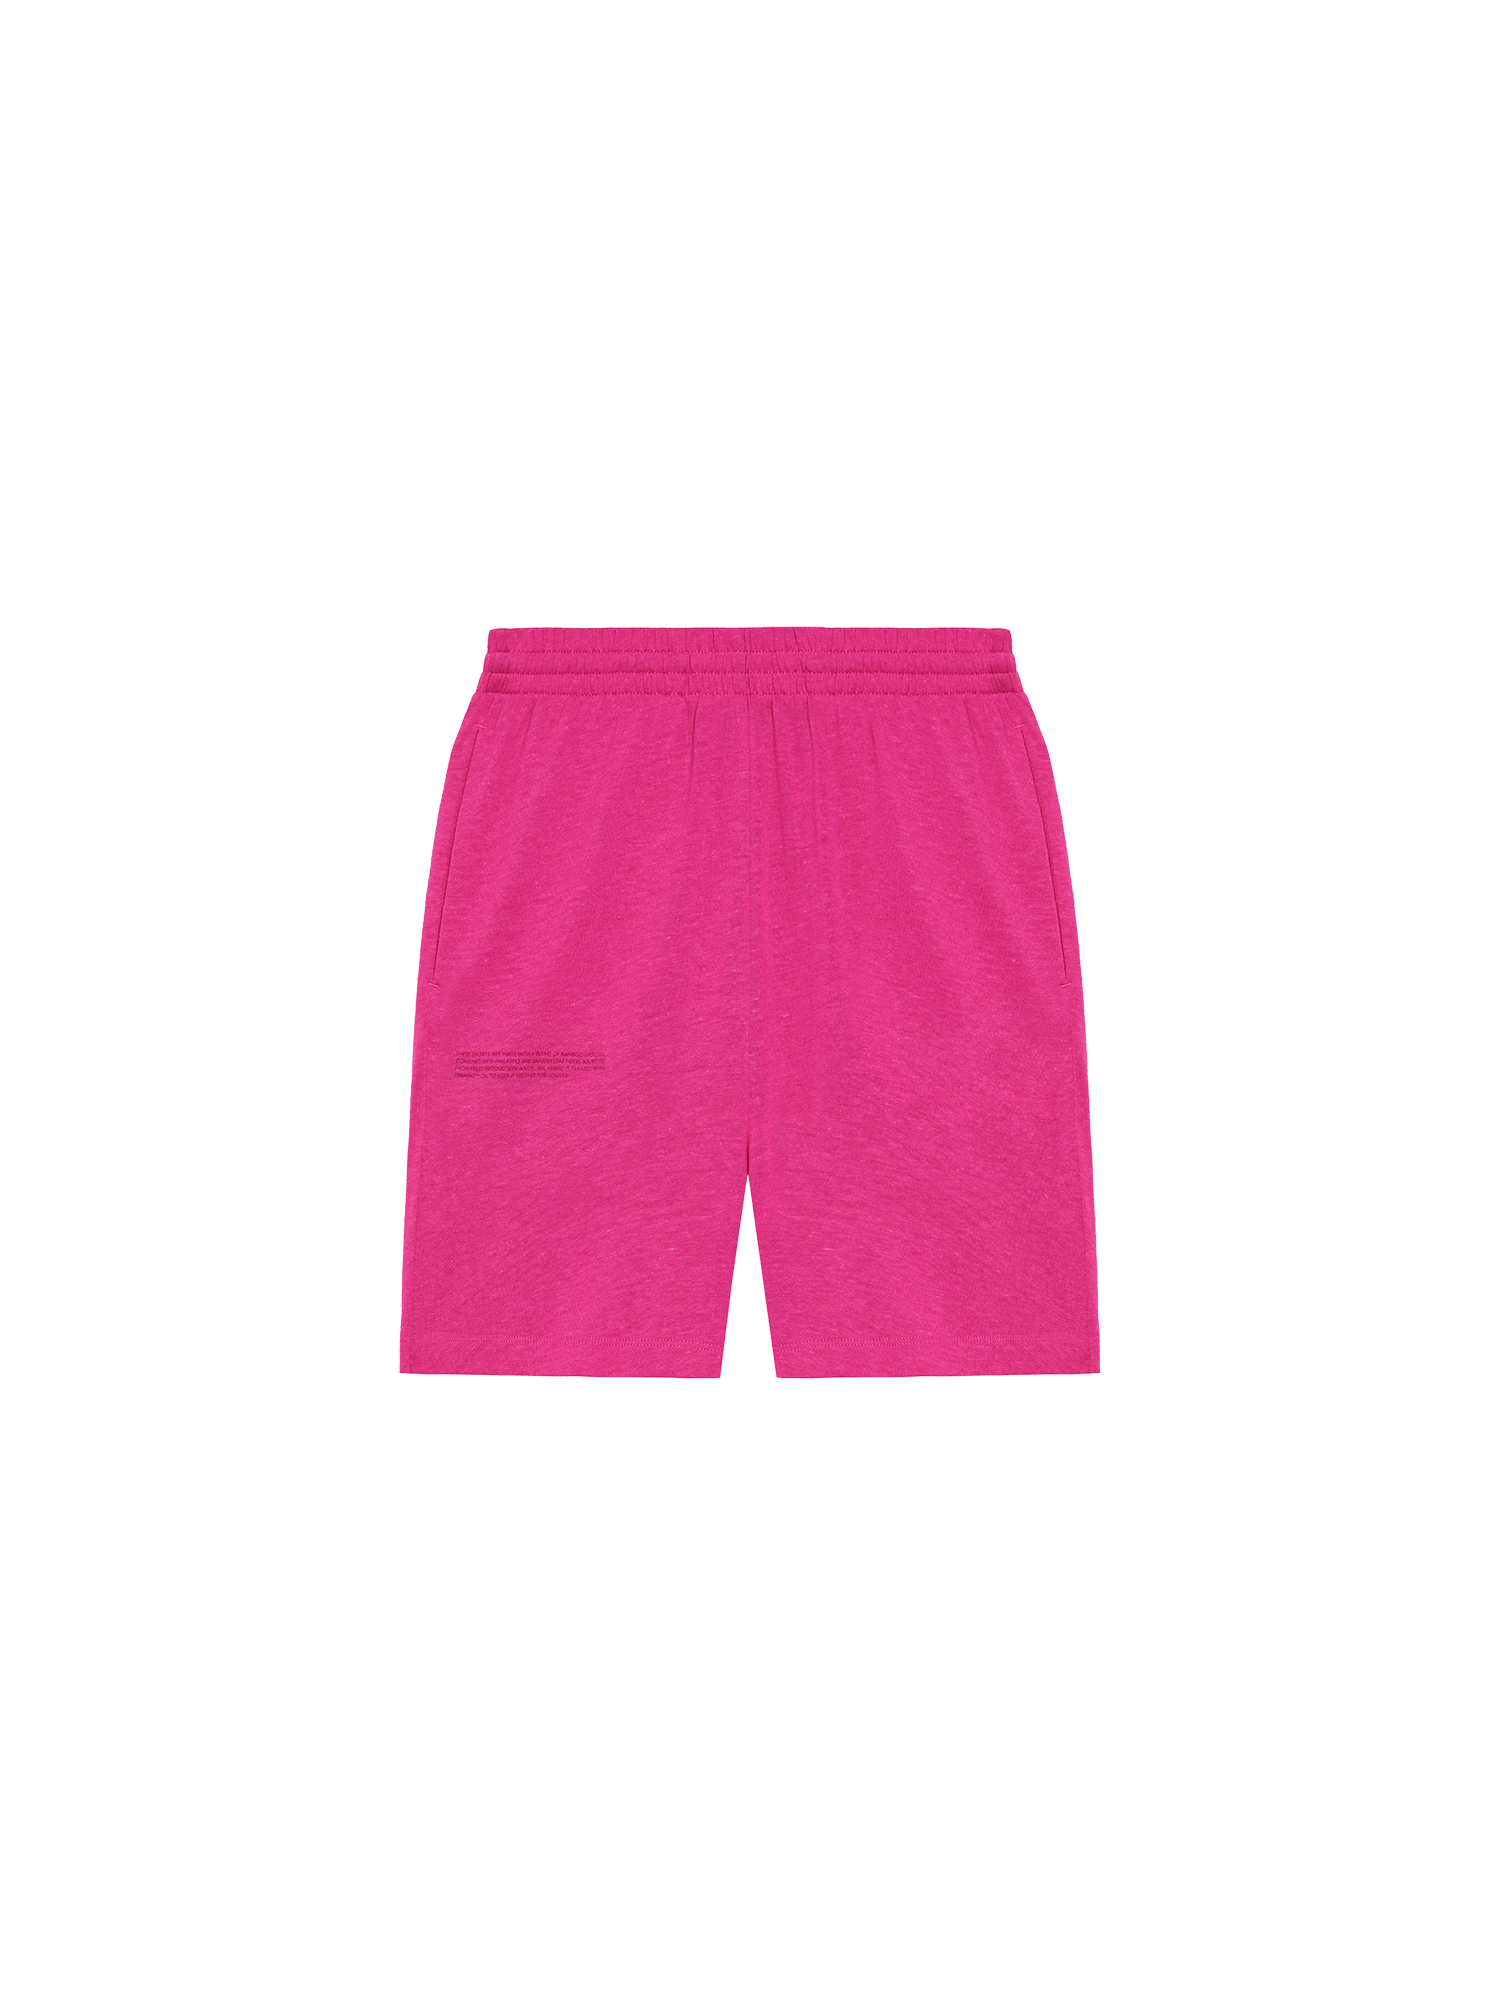 Frutfiber-Long-Shorts-Tourmaline-Pink-packshot-3